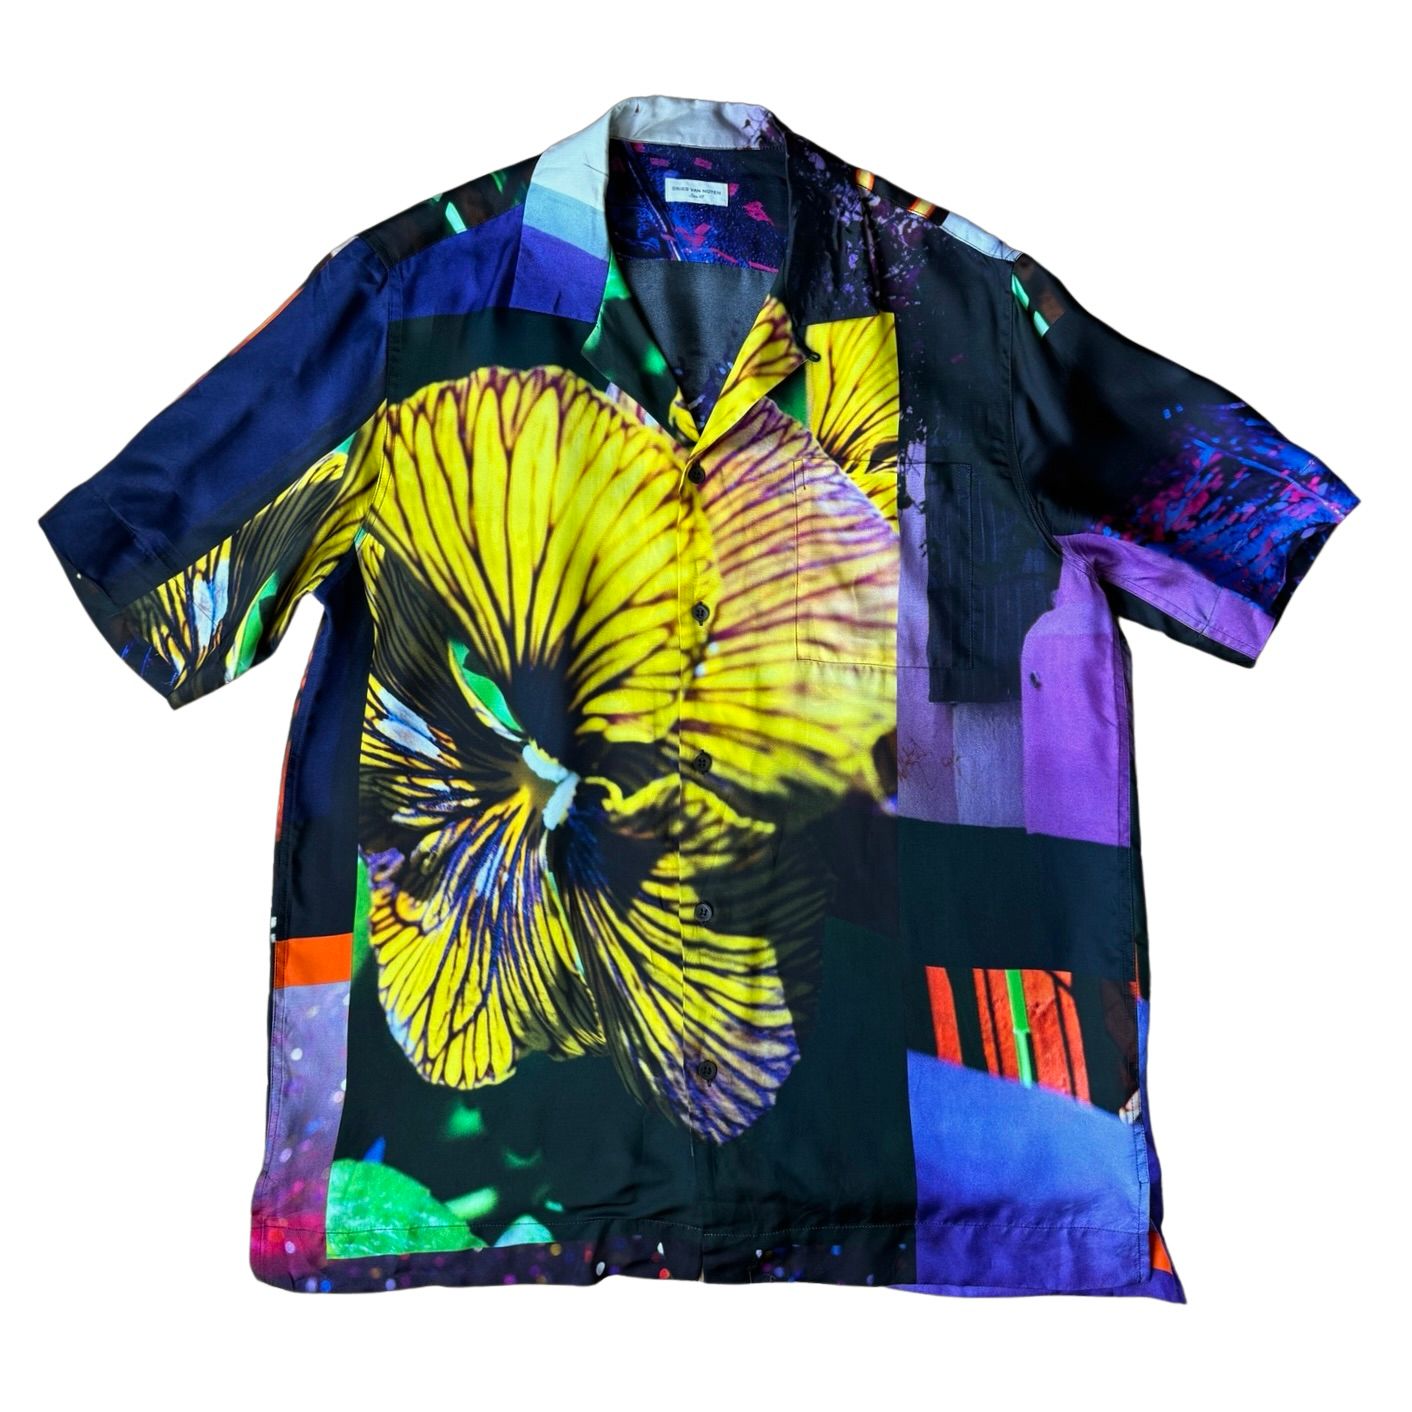 Dries Van Noten SS21 Mika Ninagawa Viscose Shirt | Grailed